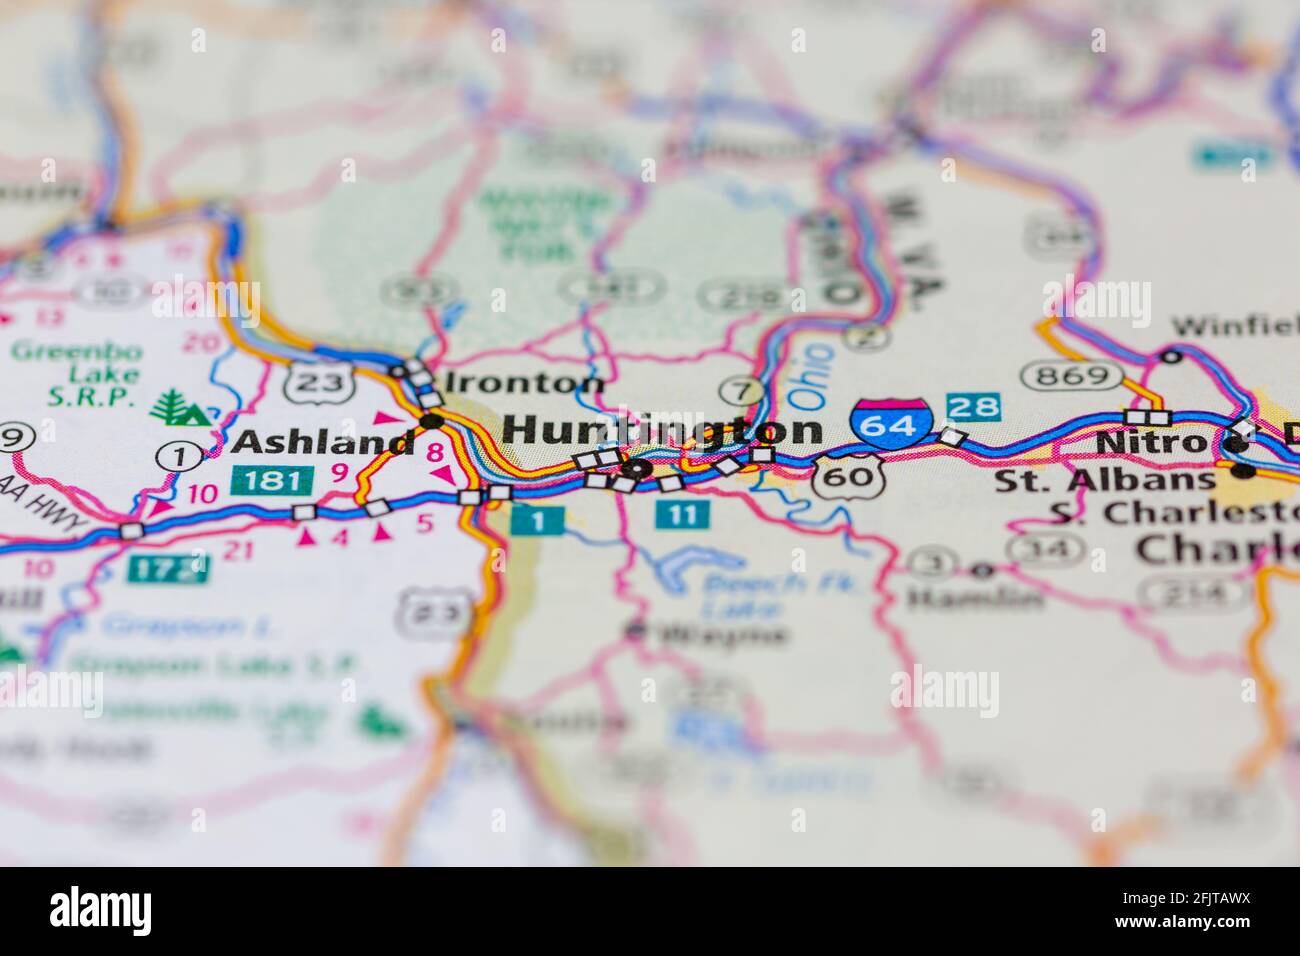 Huntington West Virginia USA et ses environs sont illustrés sur un Carte routière ou carte géographique Banque D'Images